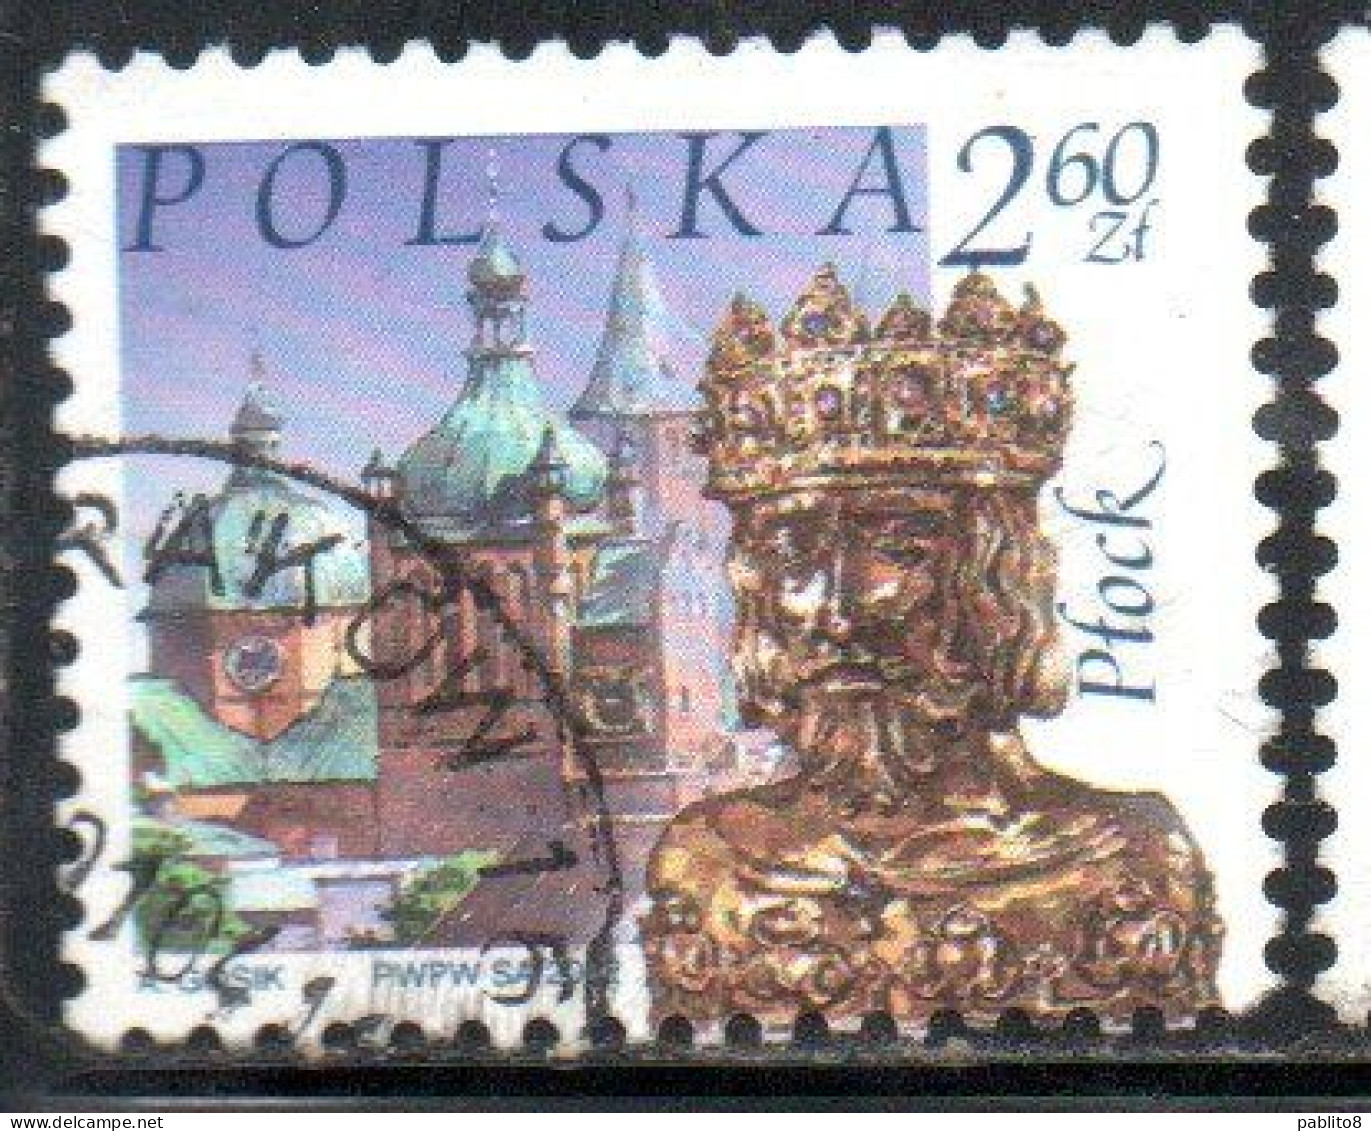 POLONIA POLAND POLSKA 2002 CITY CASTLE RELIQUARY OF ST. SIGISMUND PLOCK 2.60z USATO USED OBLITERE' - Oblitérés